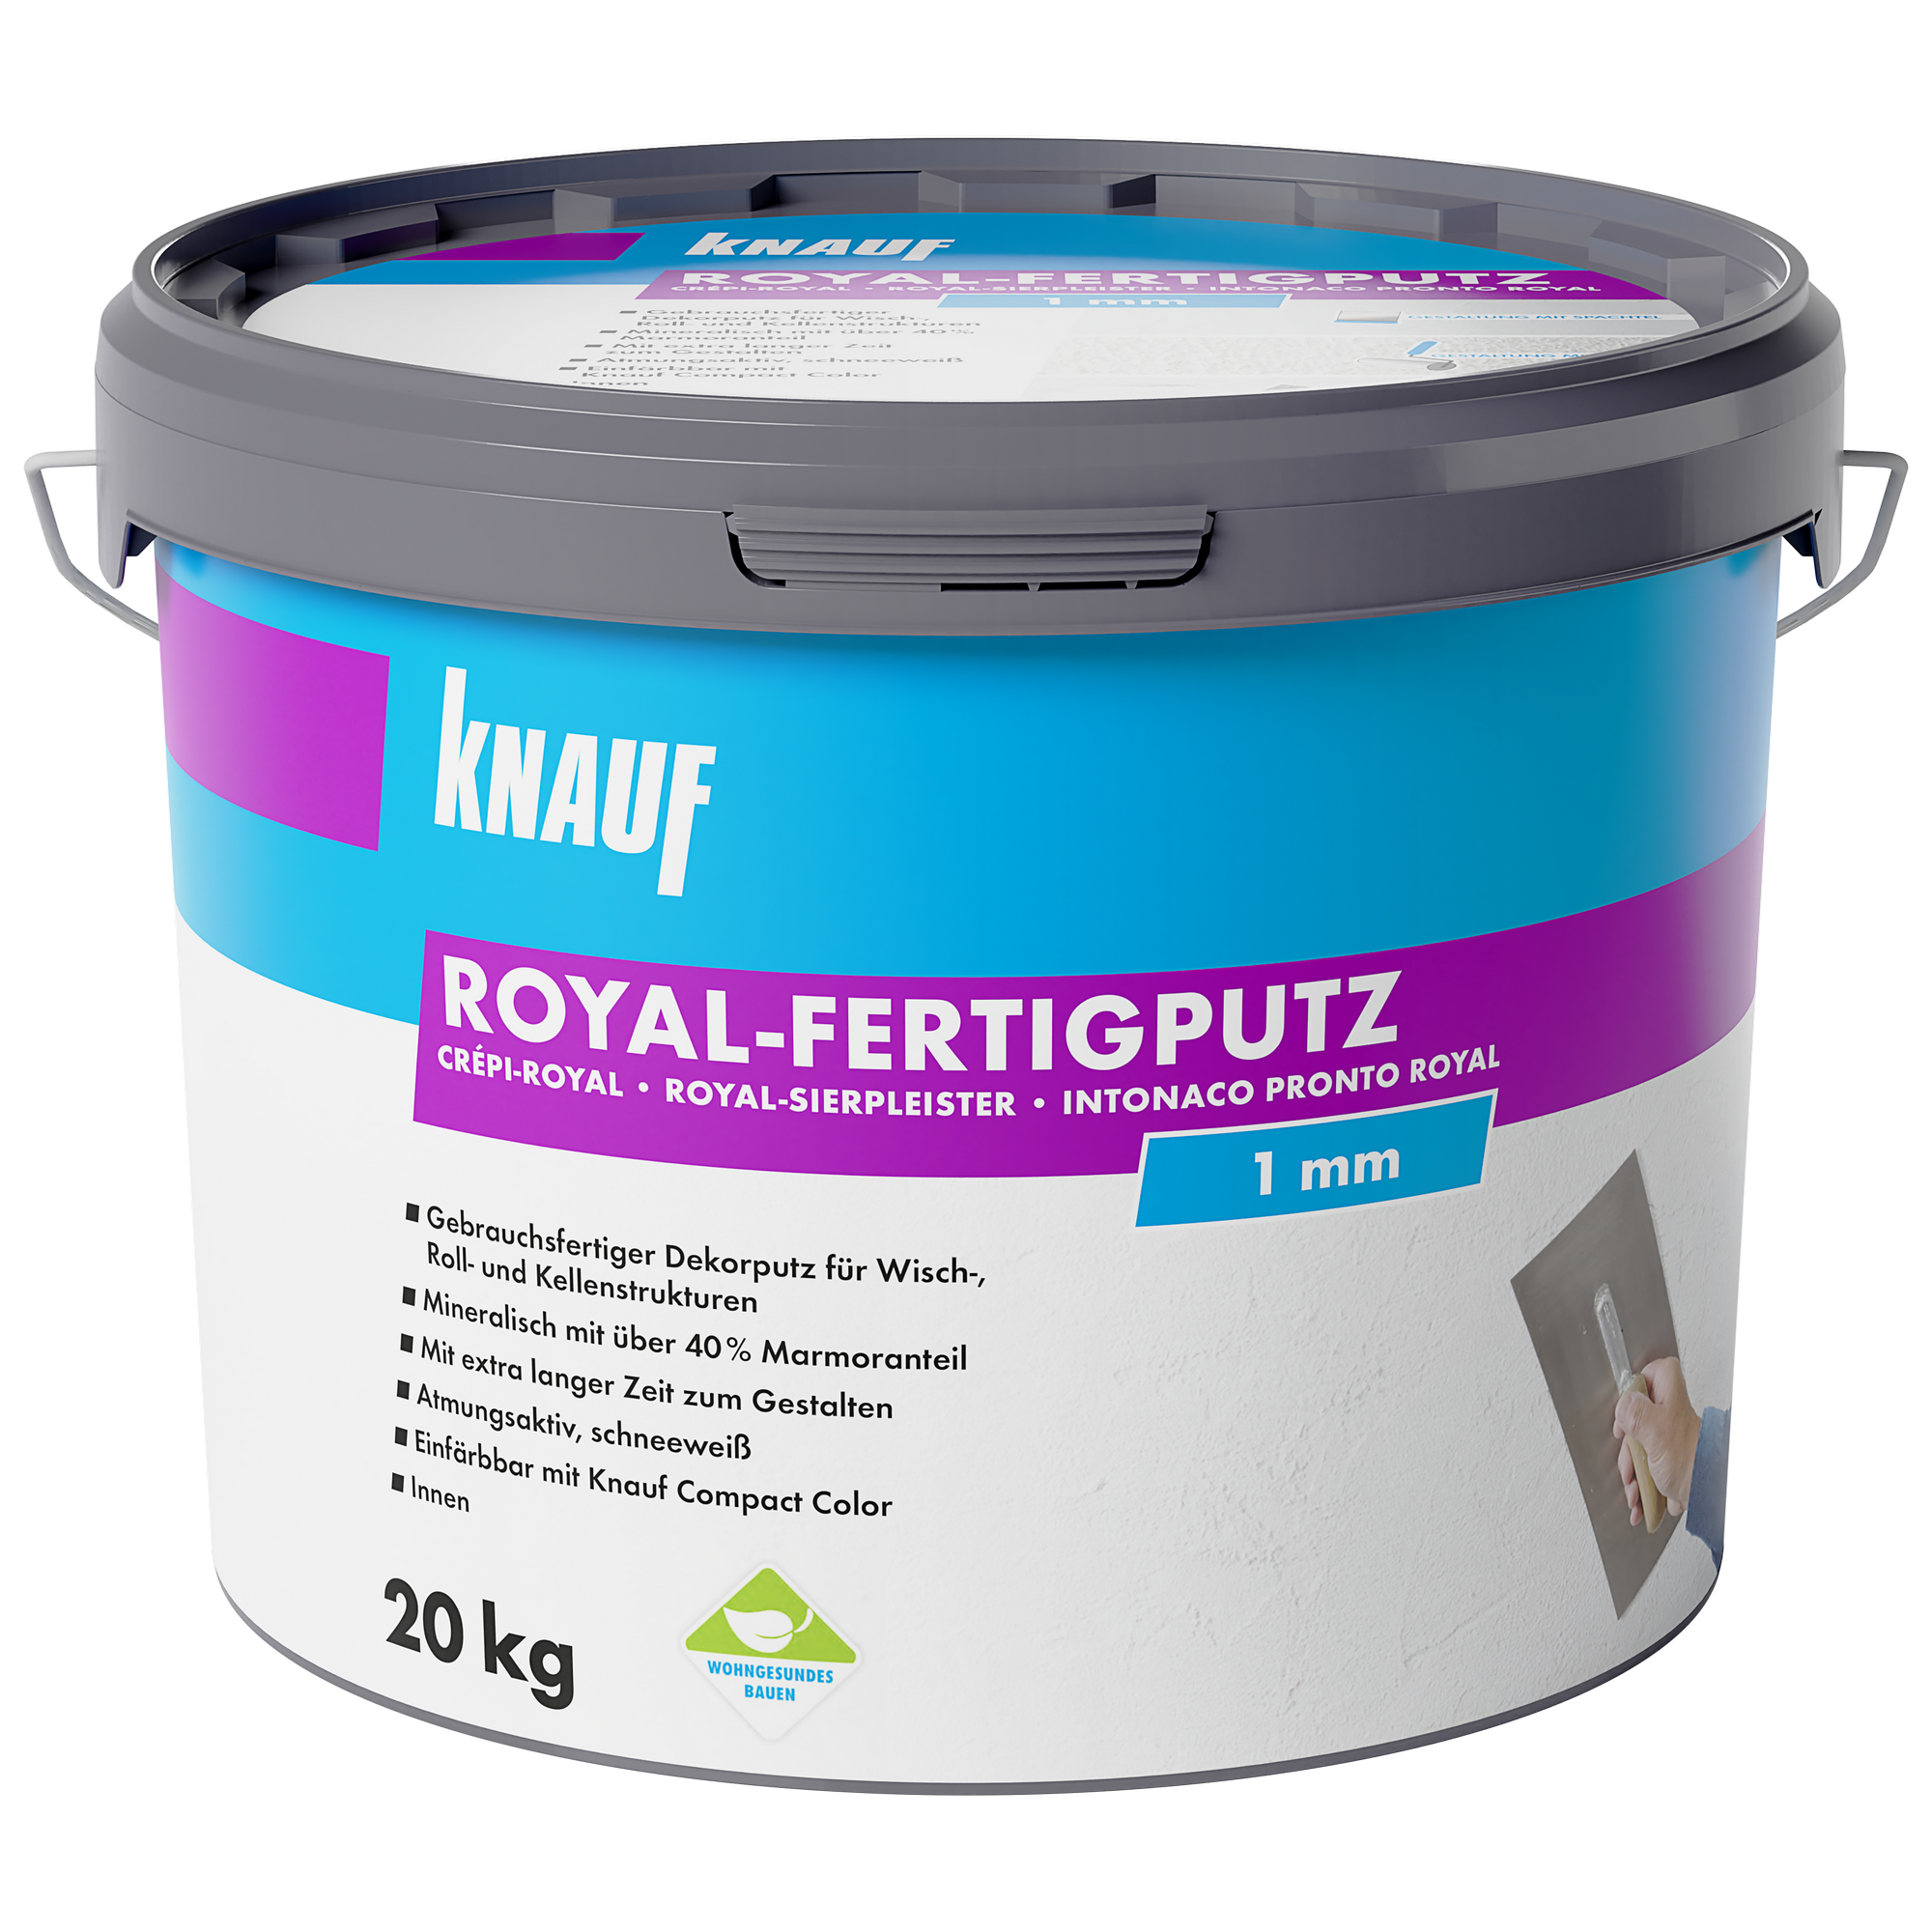 Royal-Fertigputz 'Royal' 20 kg + product picture